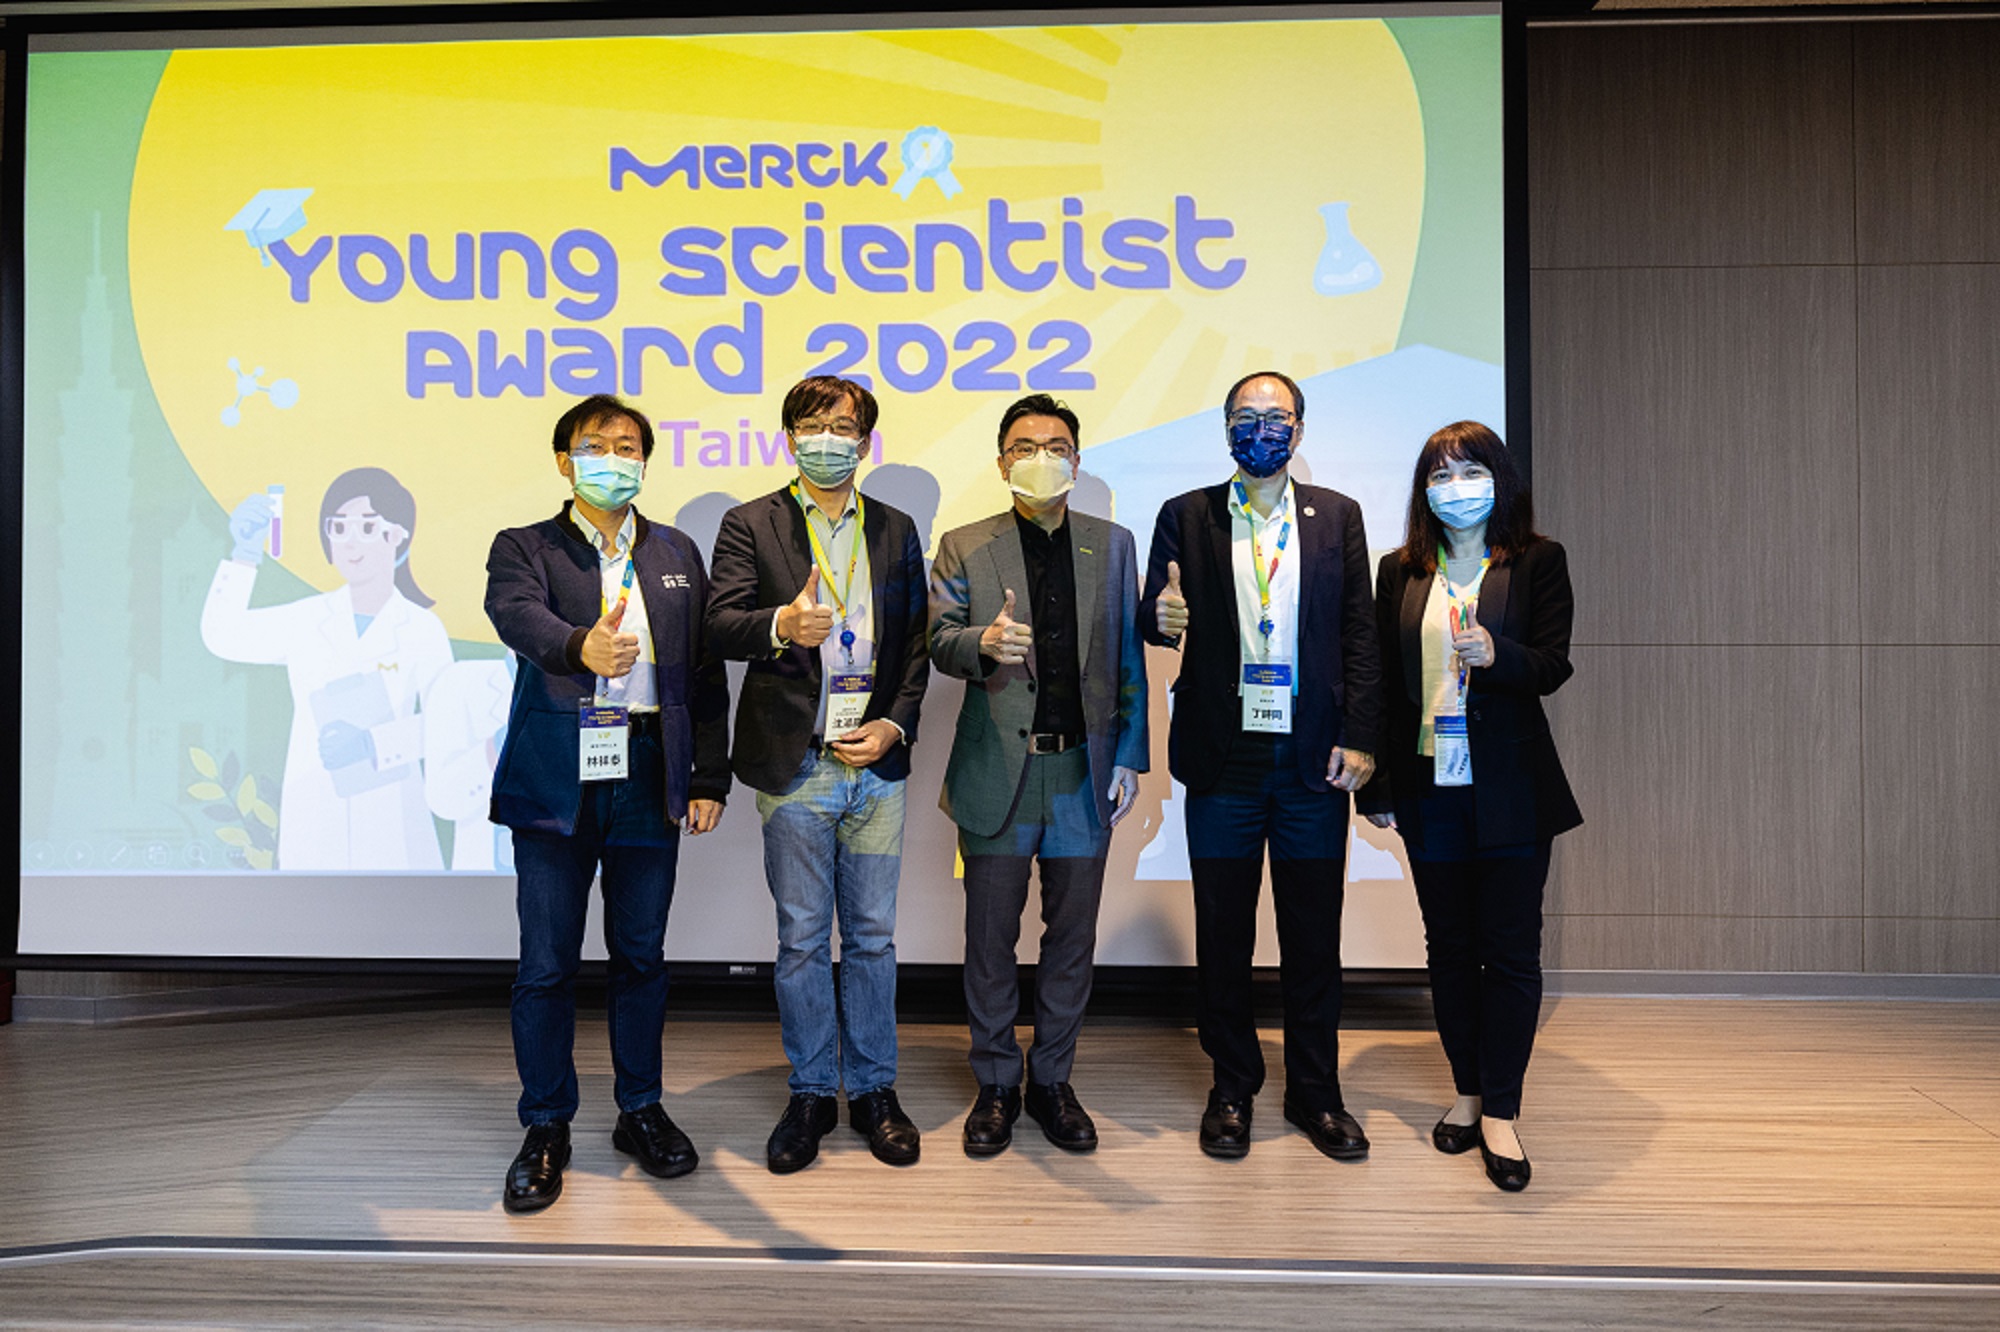 臺大國際產學聯盟協辦默克生命科學事業體舉辦在台首屆默克年輕科學人獎